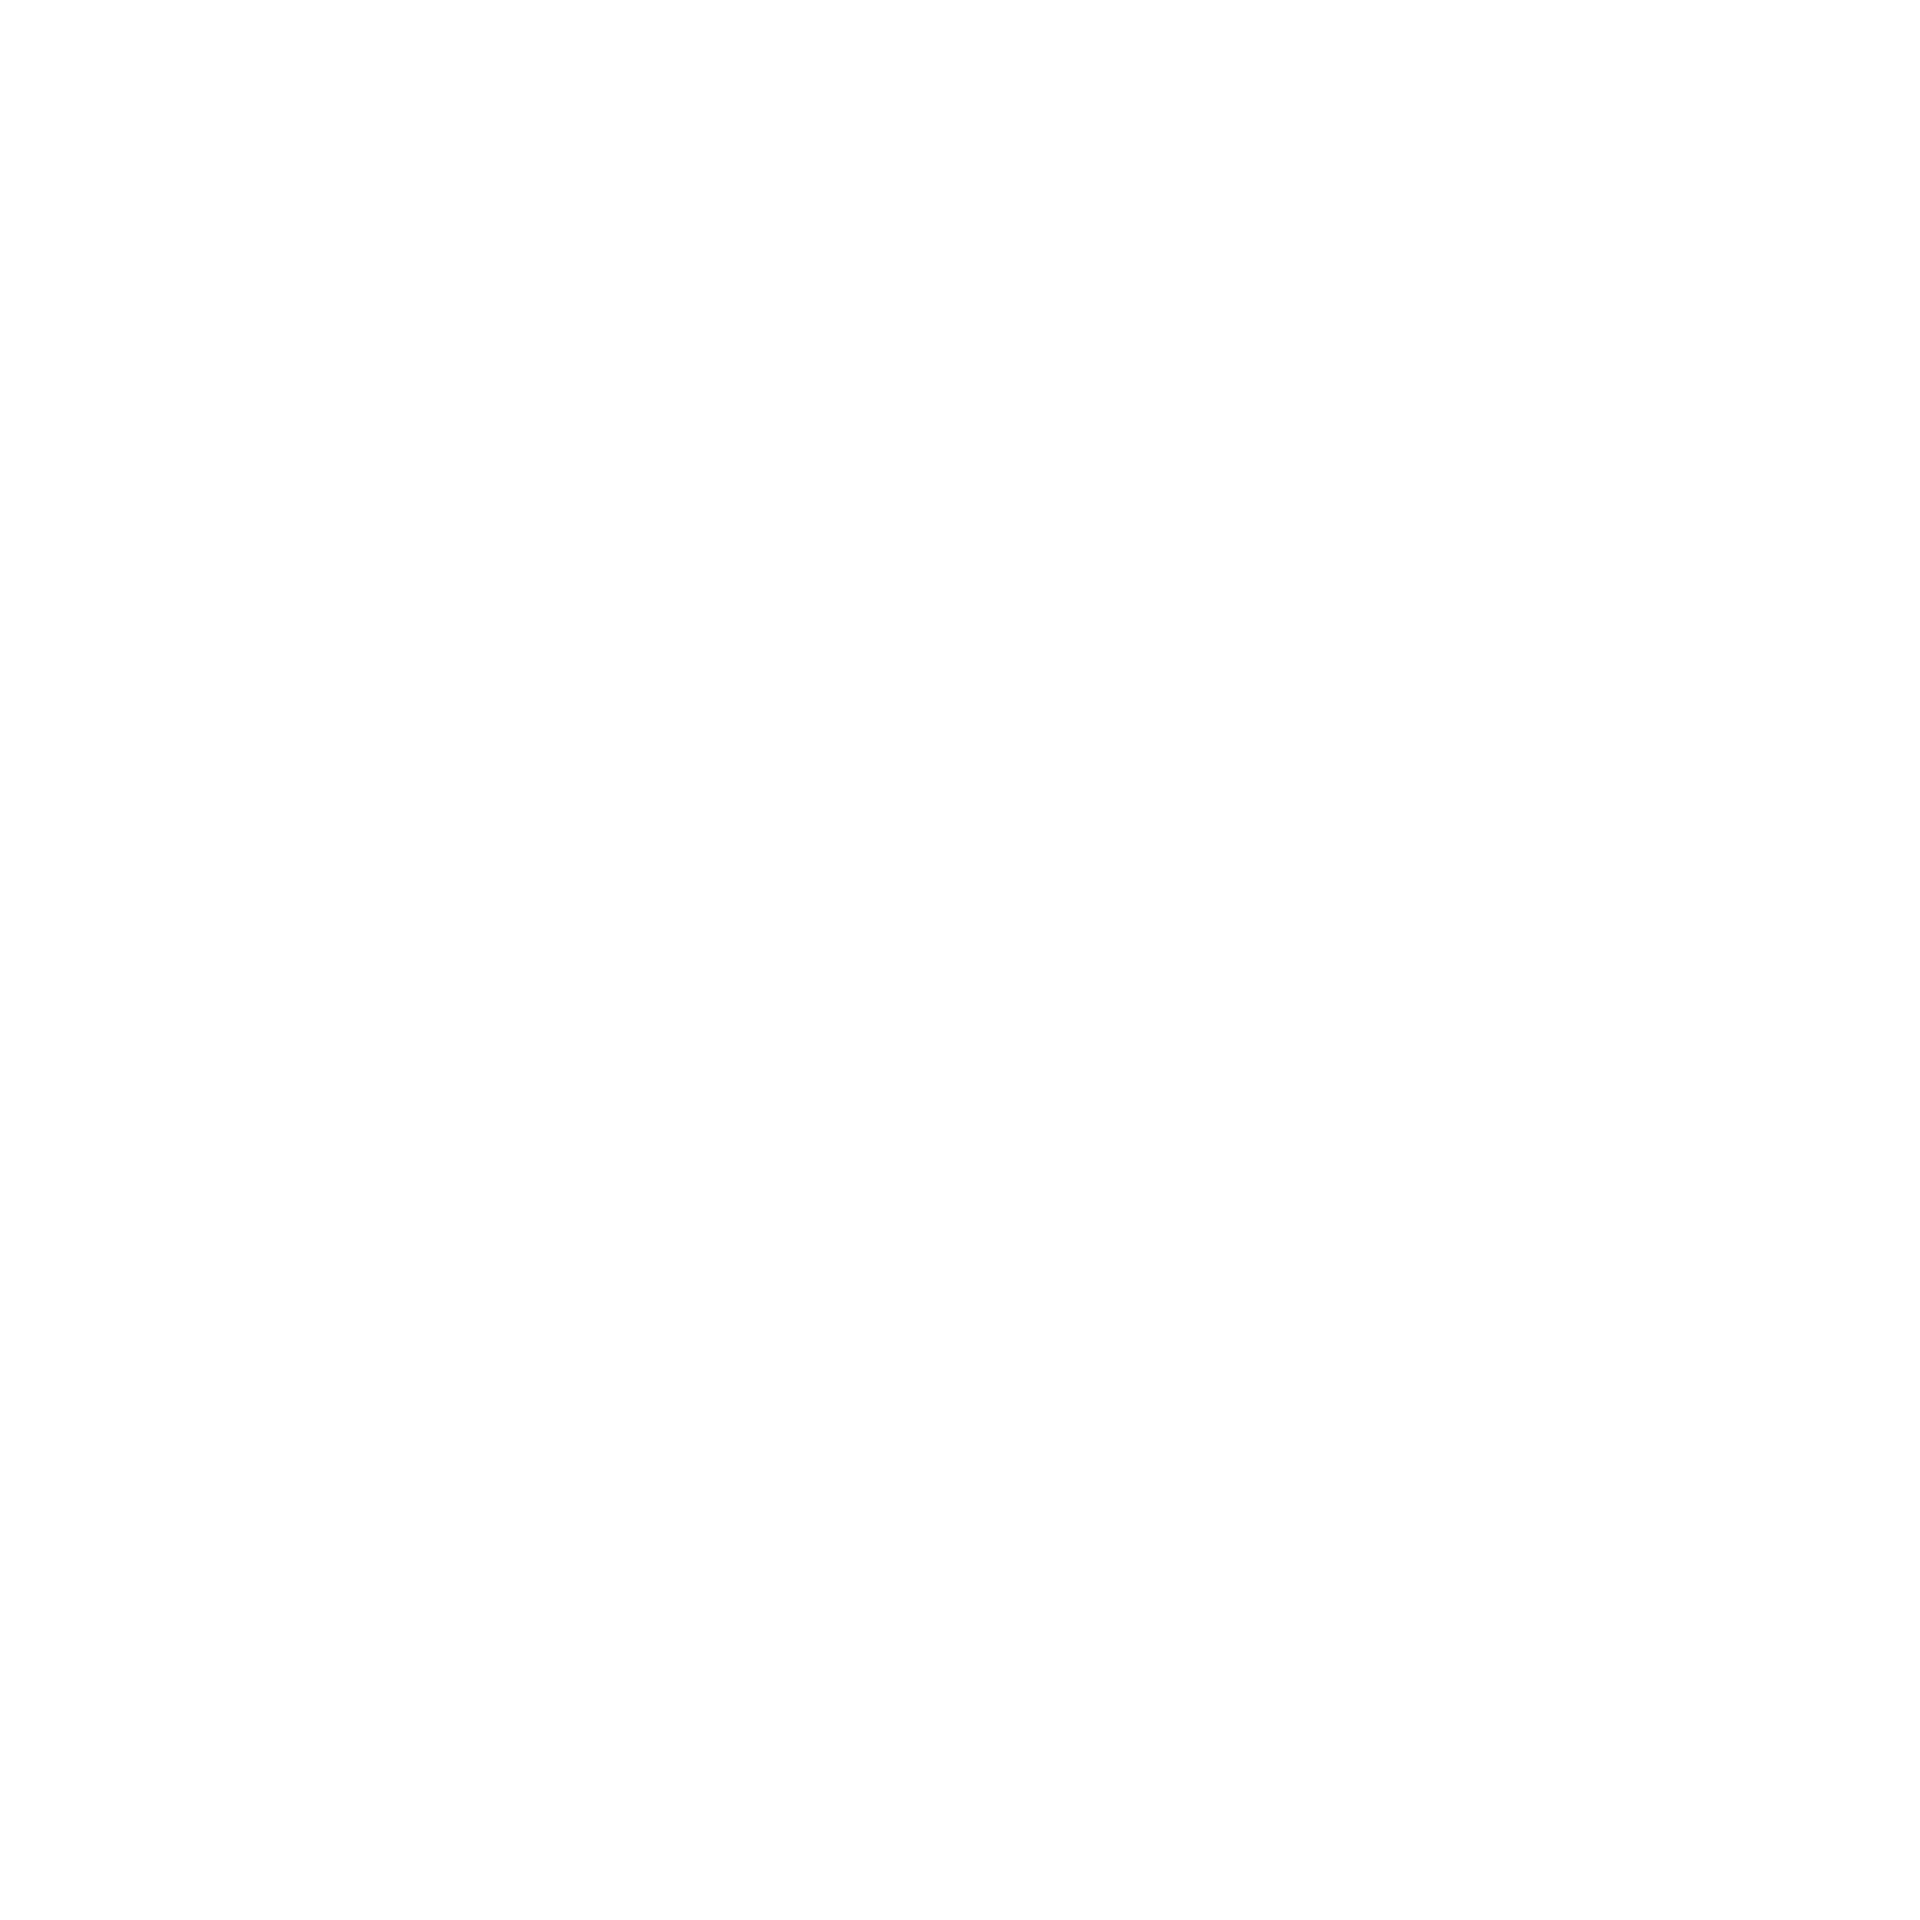 SC_O